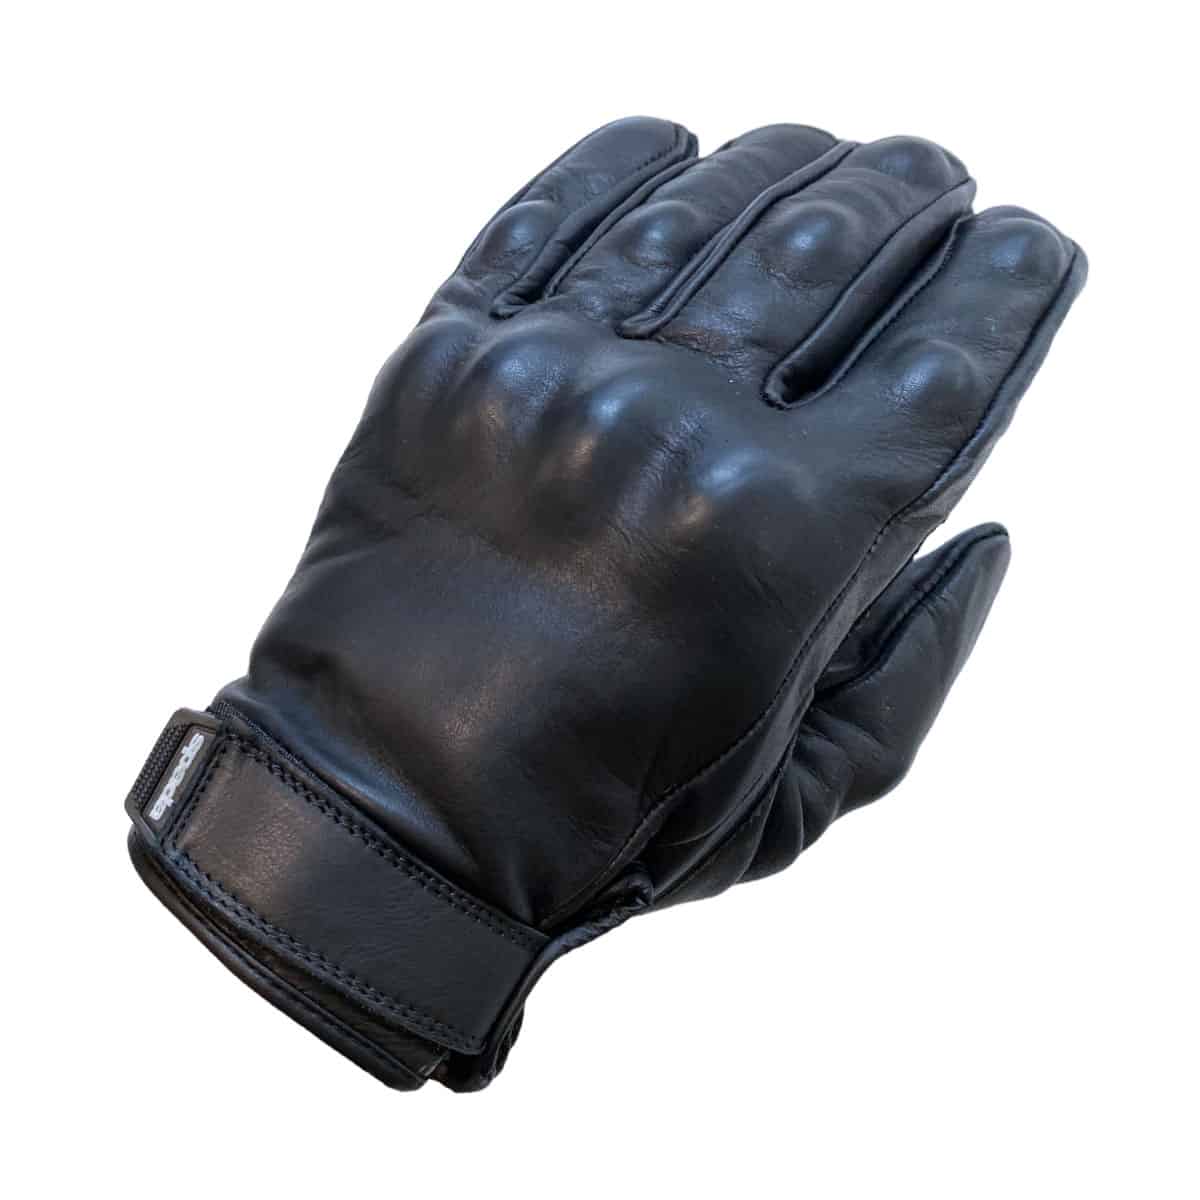 Spada Wyatt Gloves: Short-cuffed summer gloves